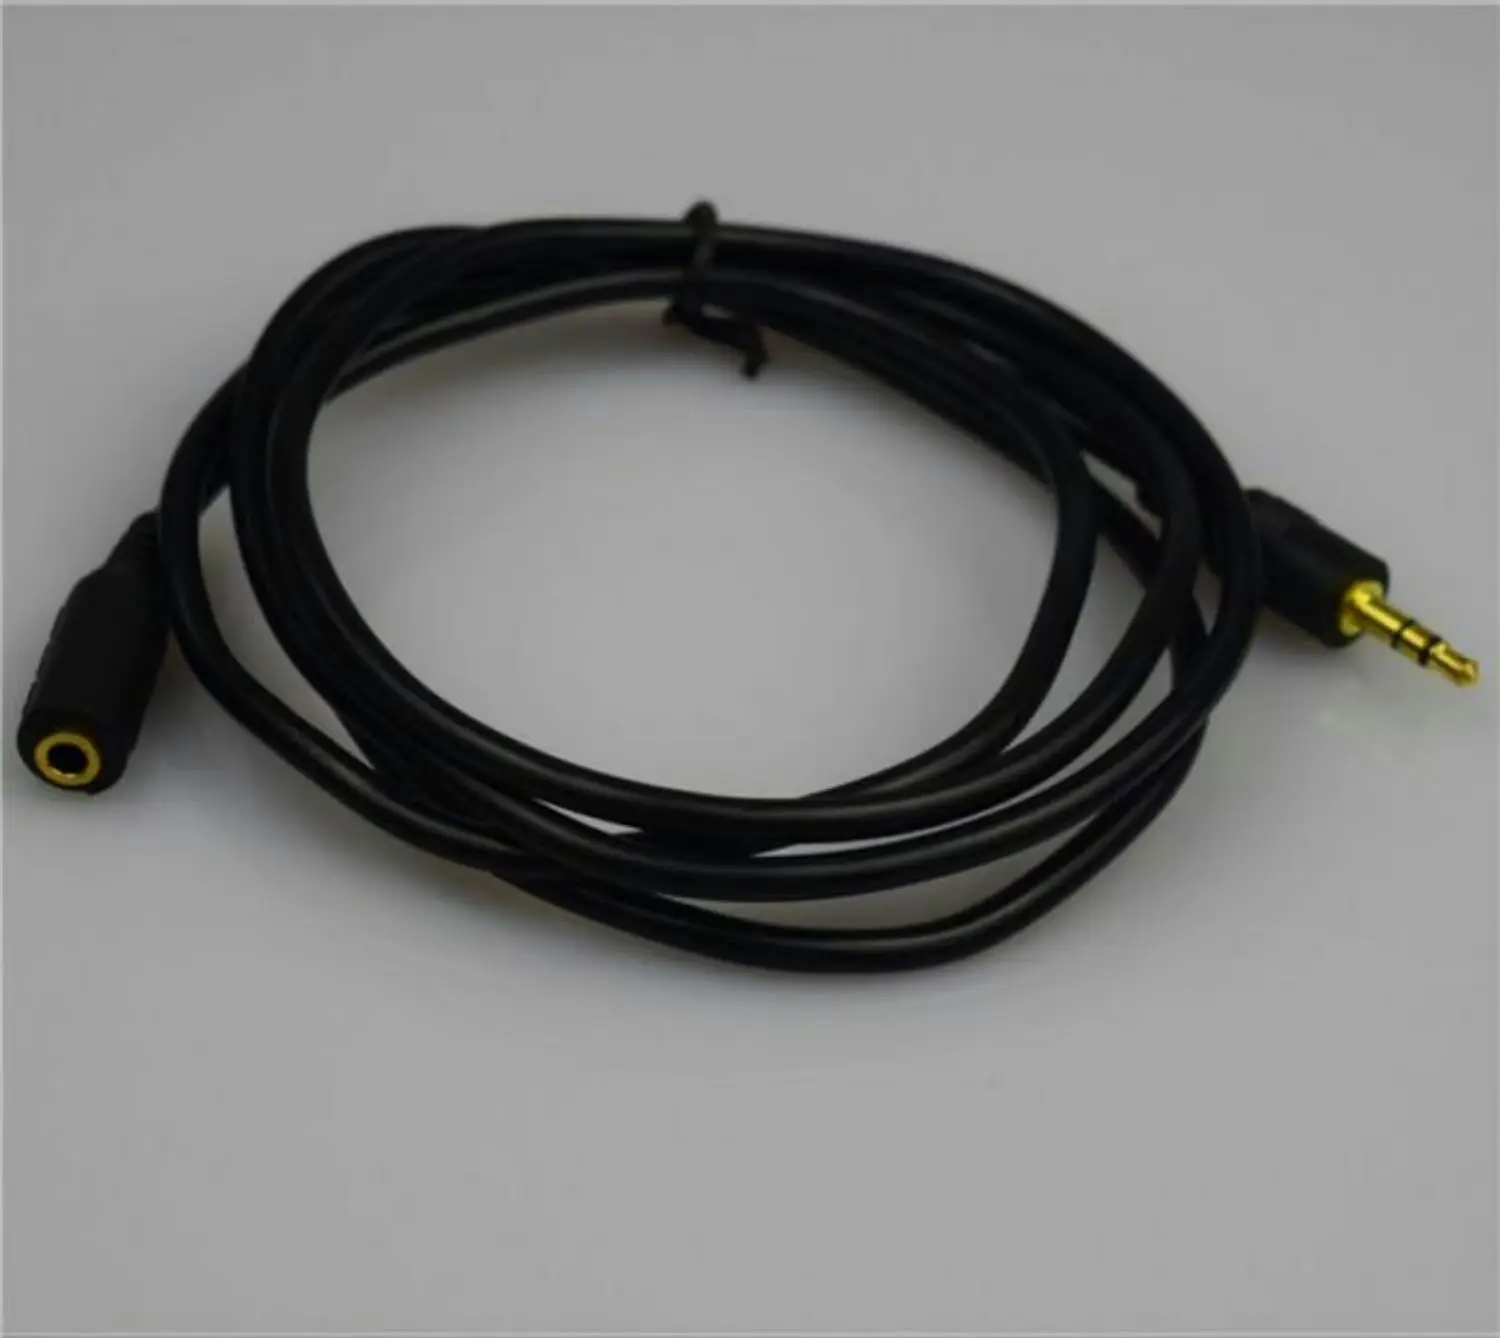 TRS 3,5mm Buchse zu TRS 3,5mm männliches Audio-Verlängerung kabel für Kopfhörer